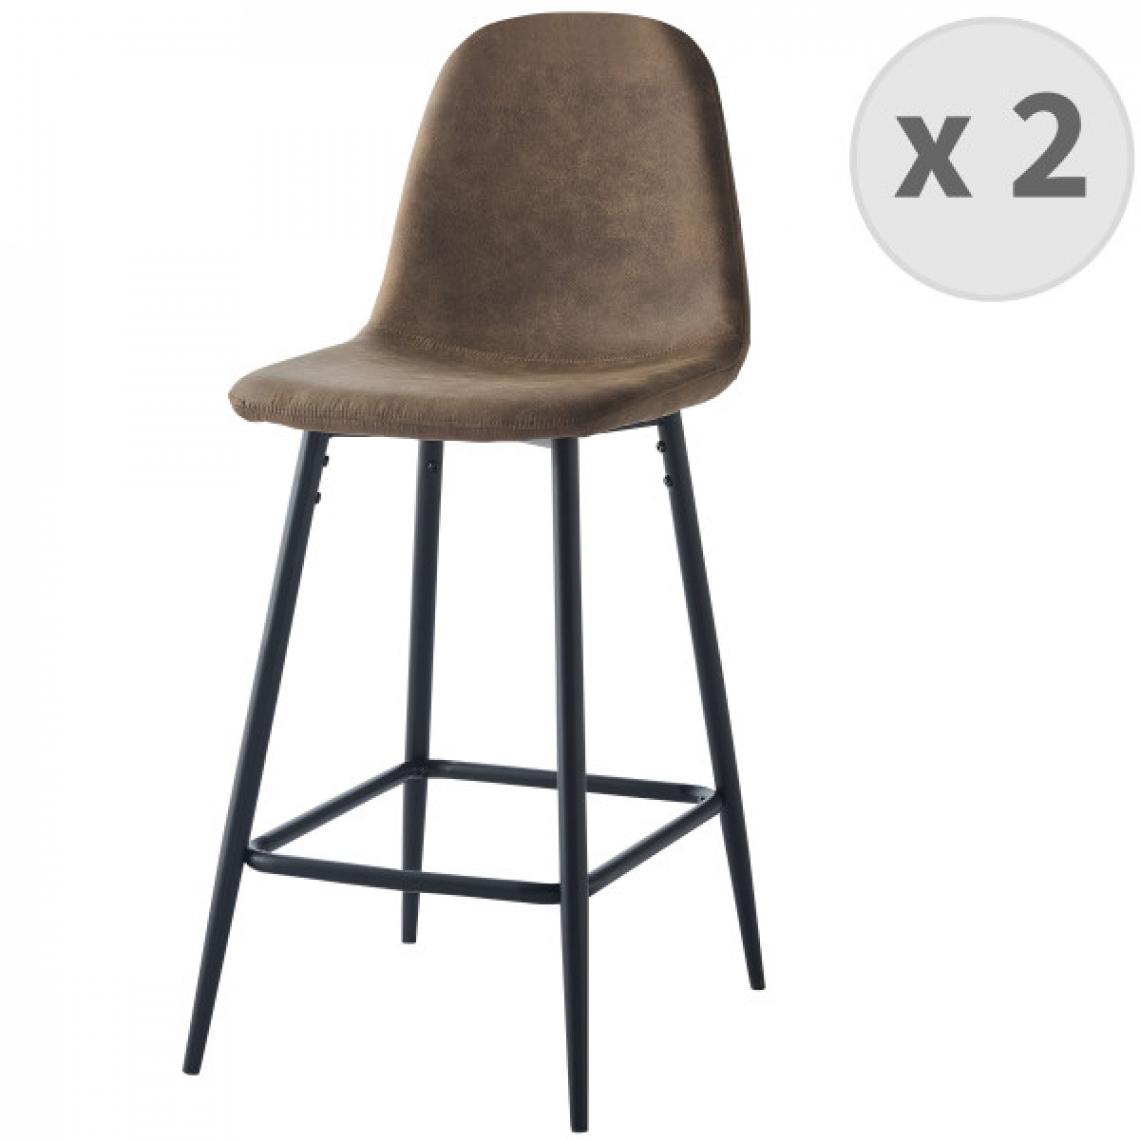 Moloo - MANCHESTER - Chaise de bar vintage microfibre marron pieds métal noir (x2) - Tabourets